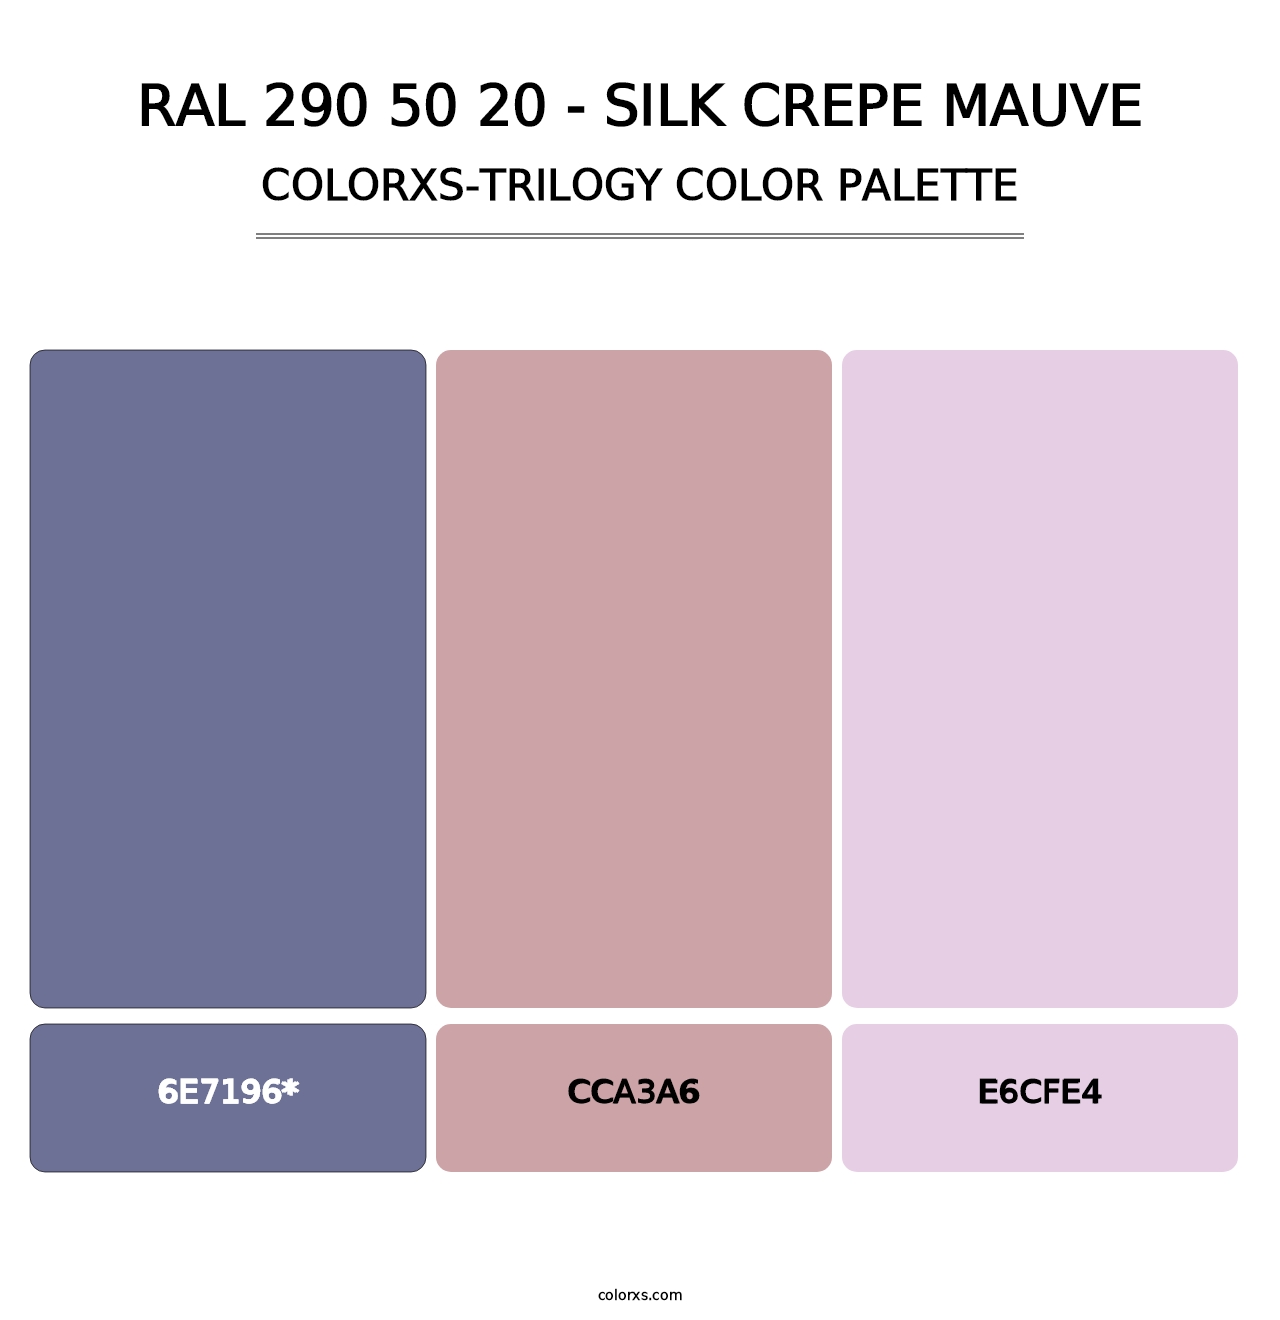 RAL 290 50 20 - Silk Crepe Mauve - Colorxs Trilogy Palette